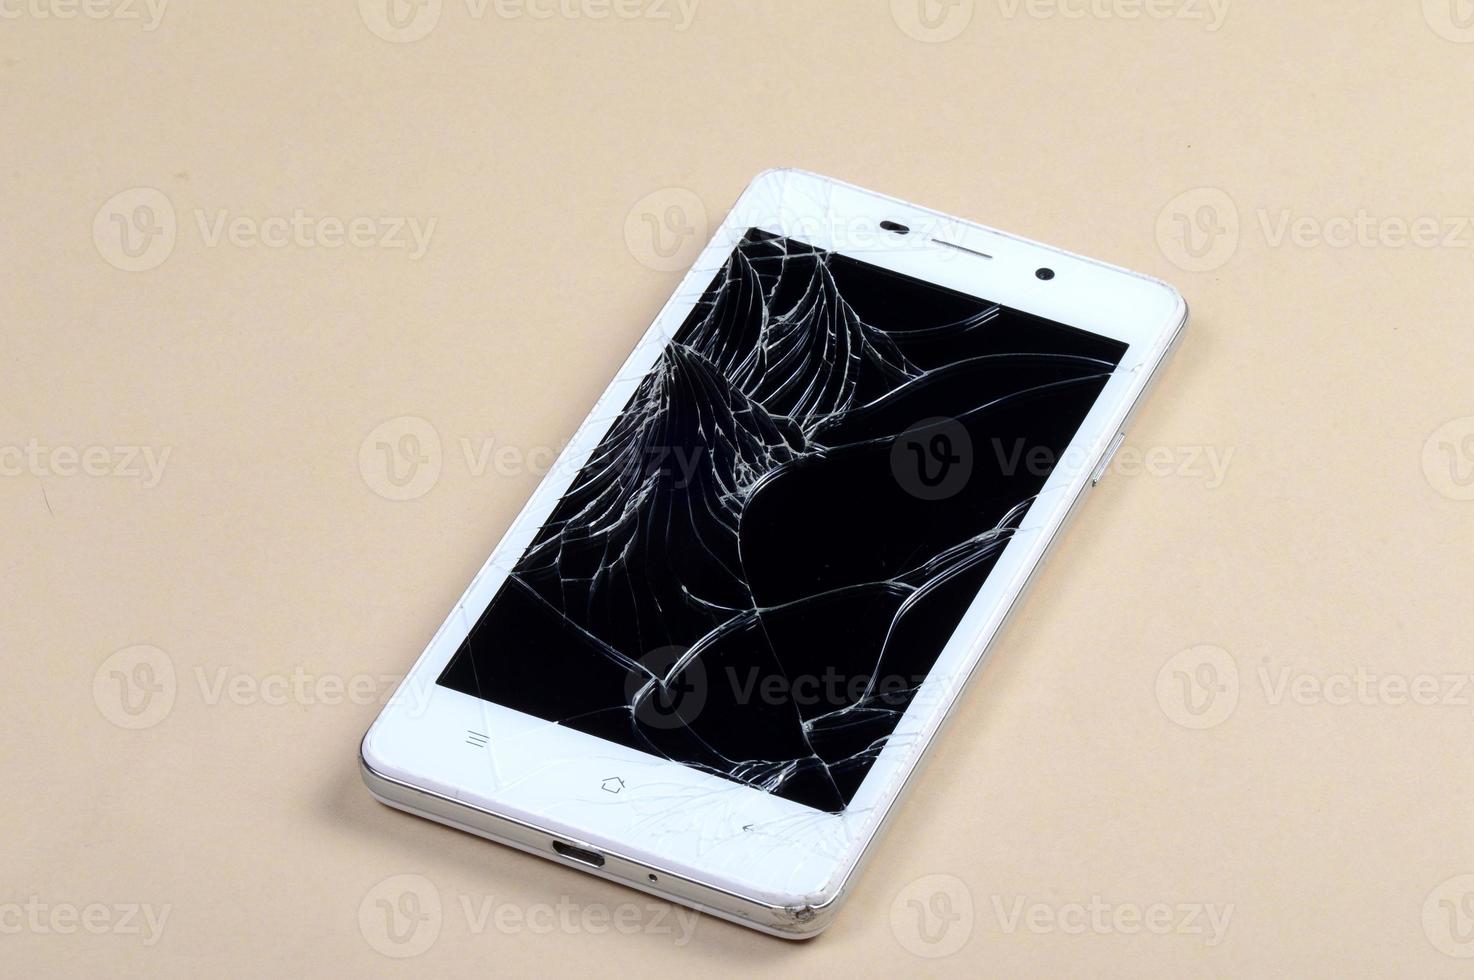 smartphone met gebroken scherm foto